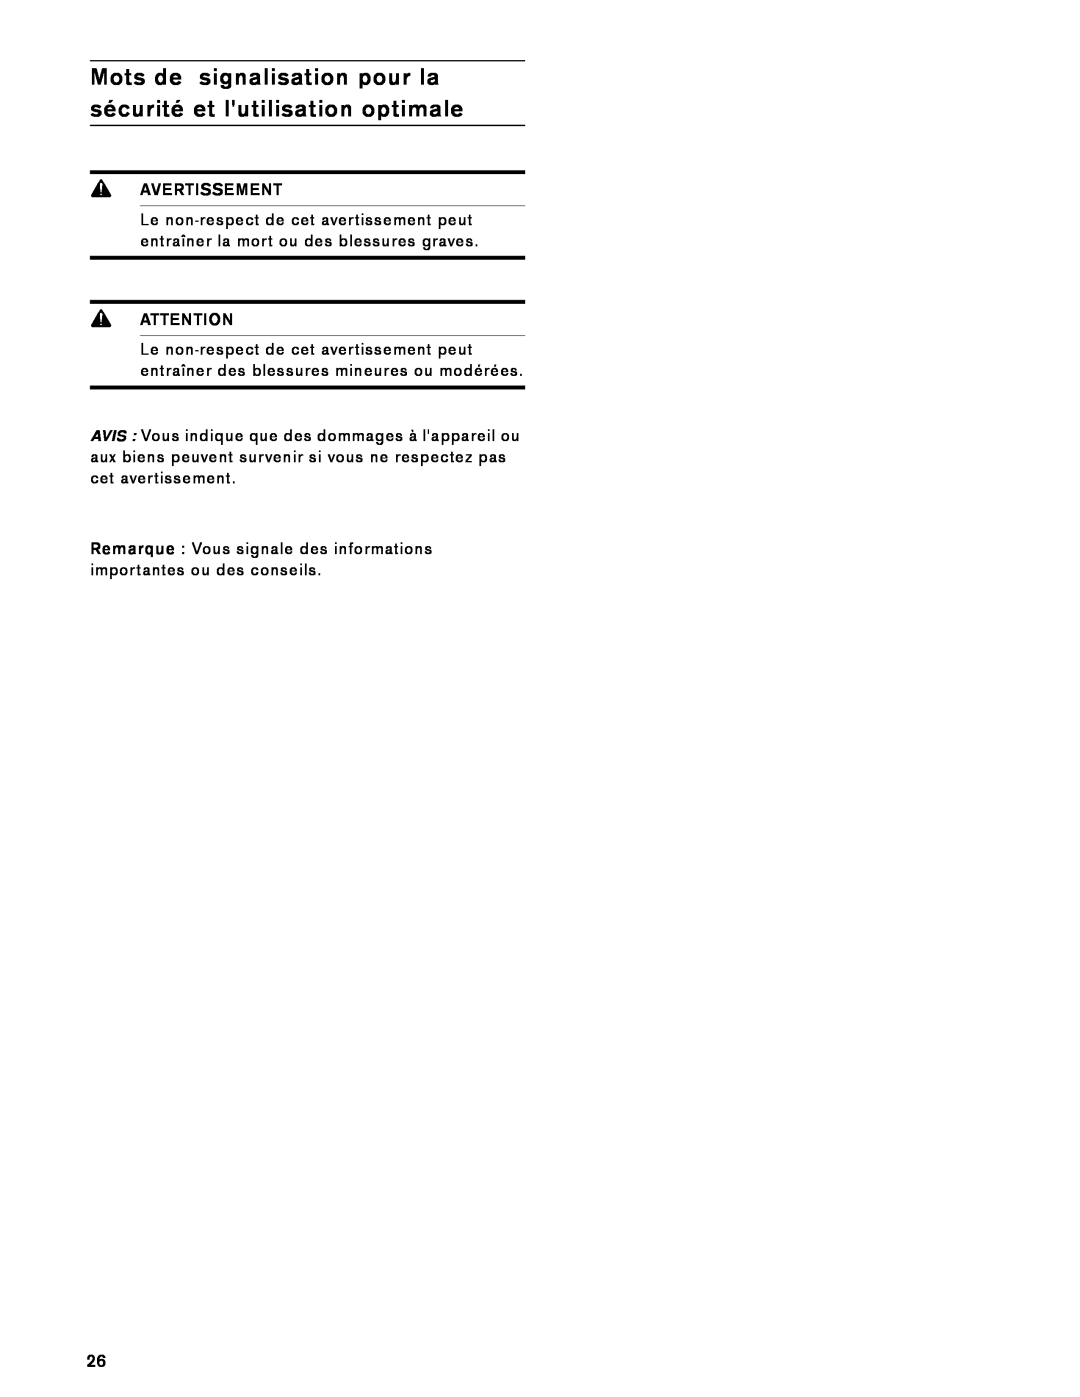 Gaggenau VK 230 714 manual Mots de signalisation pour la sécurité et lutilisation optimale, Avertissement, Attention 